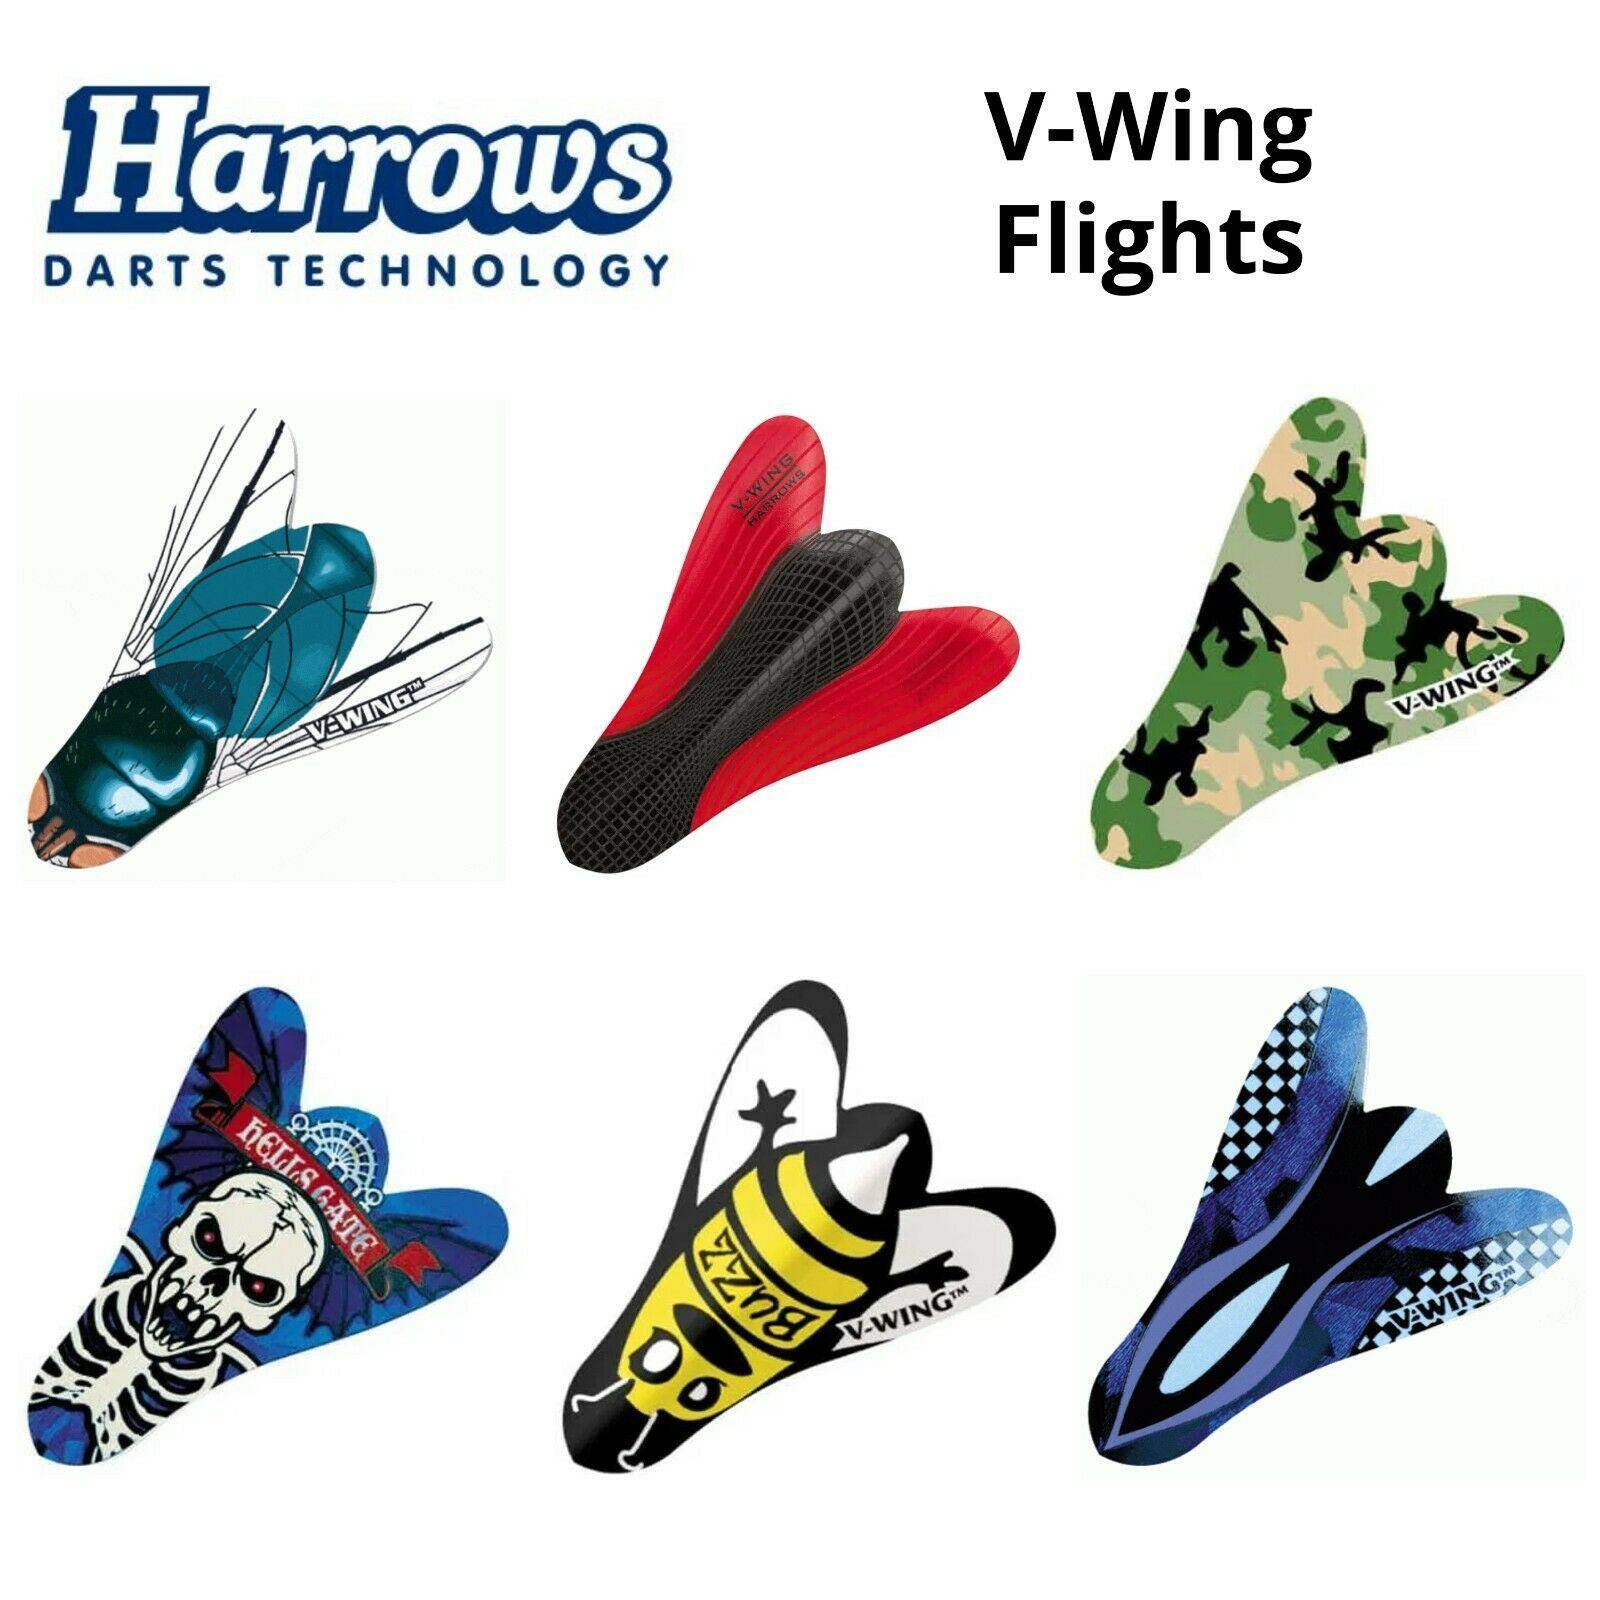 Harrows V-Wing Flights